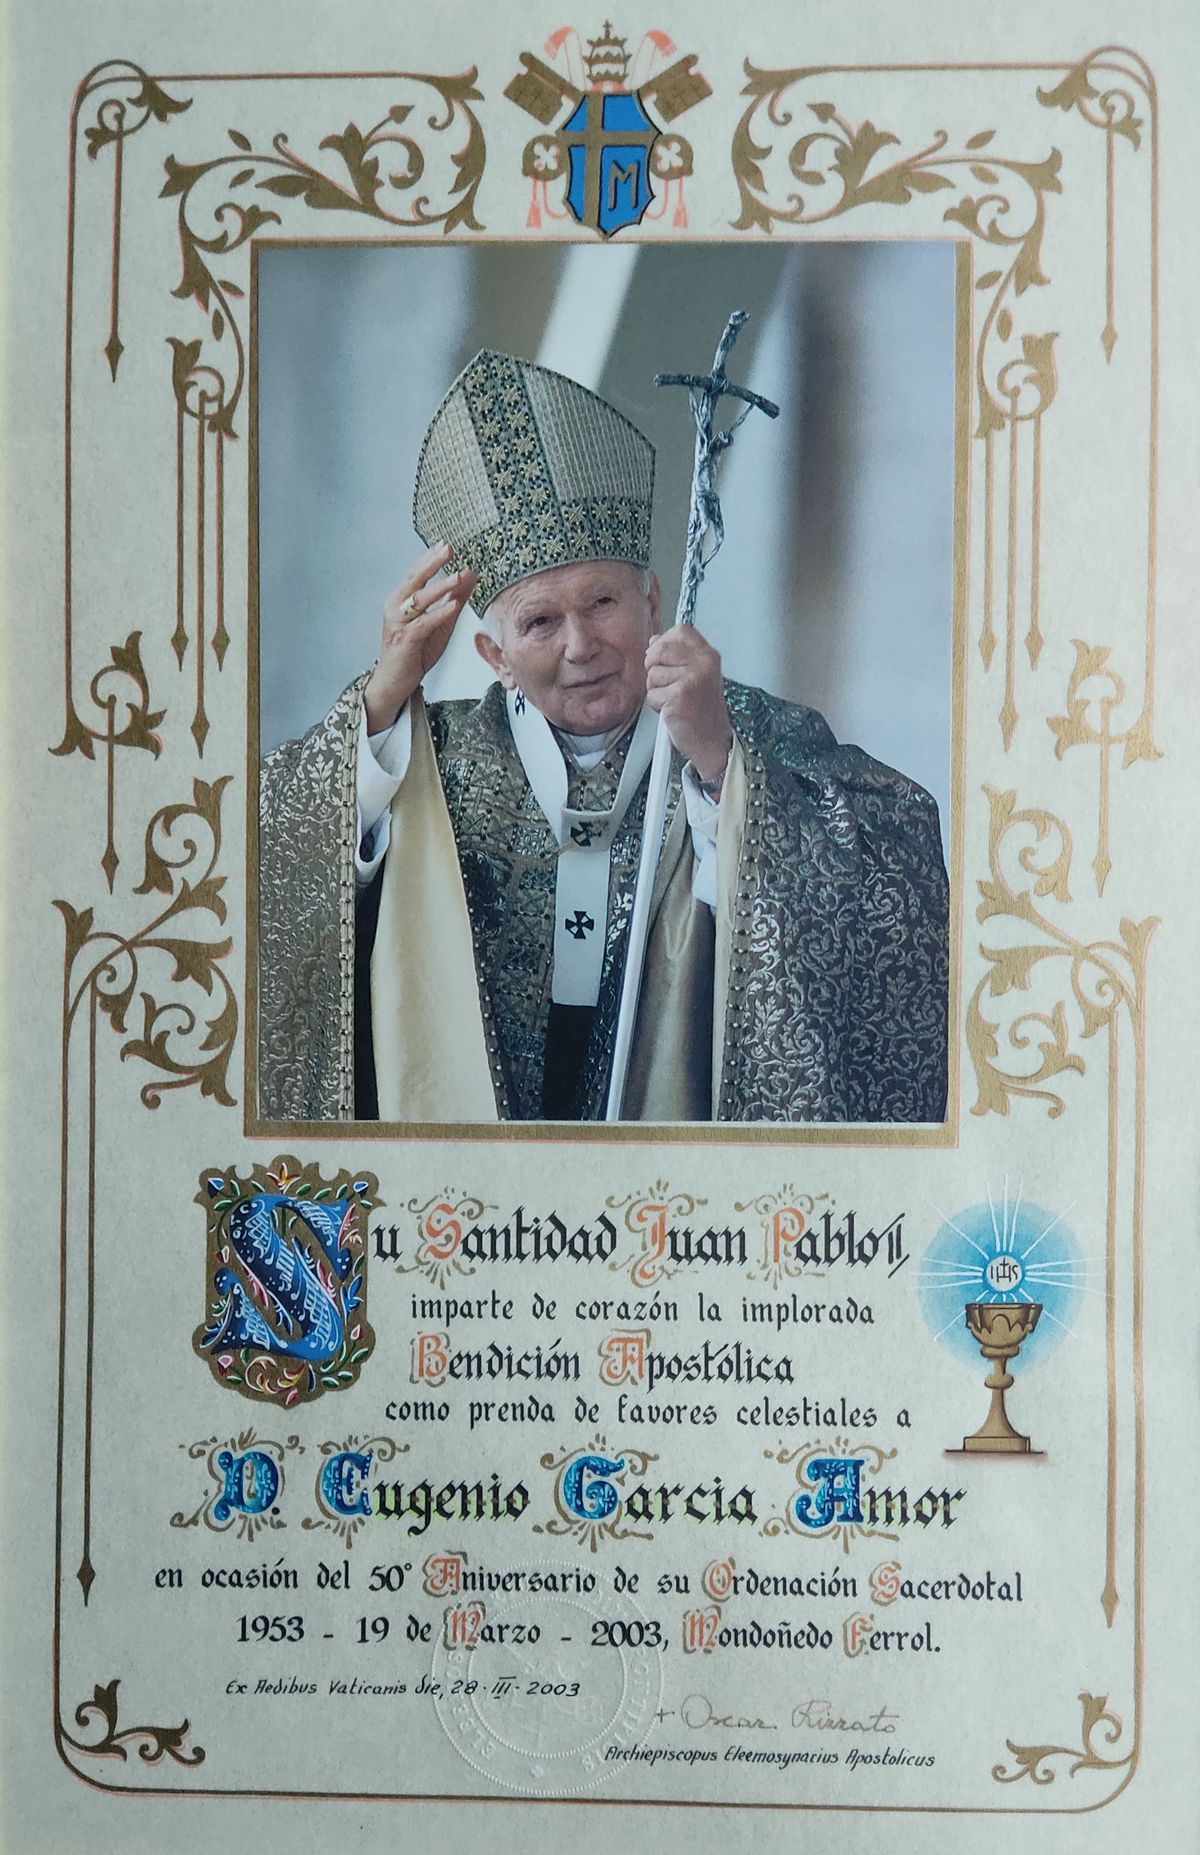 50 aniversario da sua ordenación sacerdotal (19/03/2003)